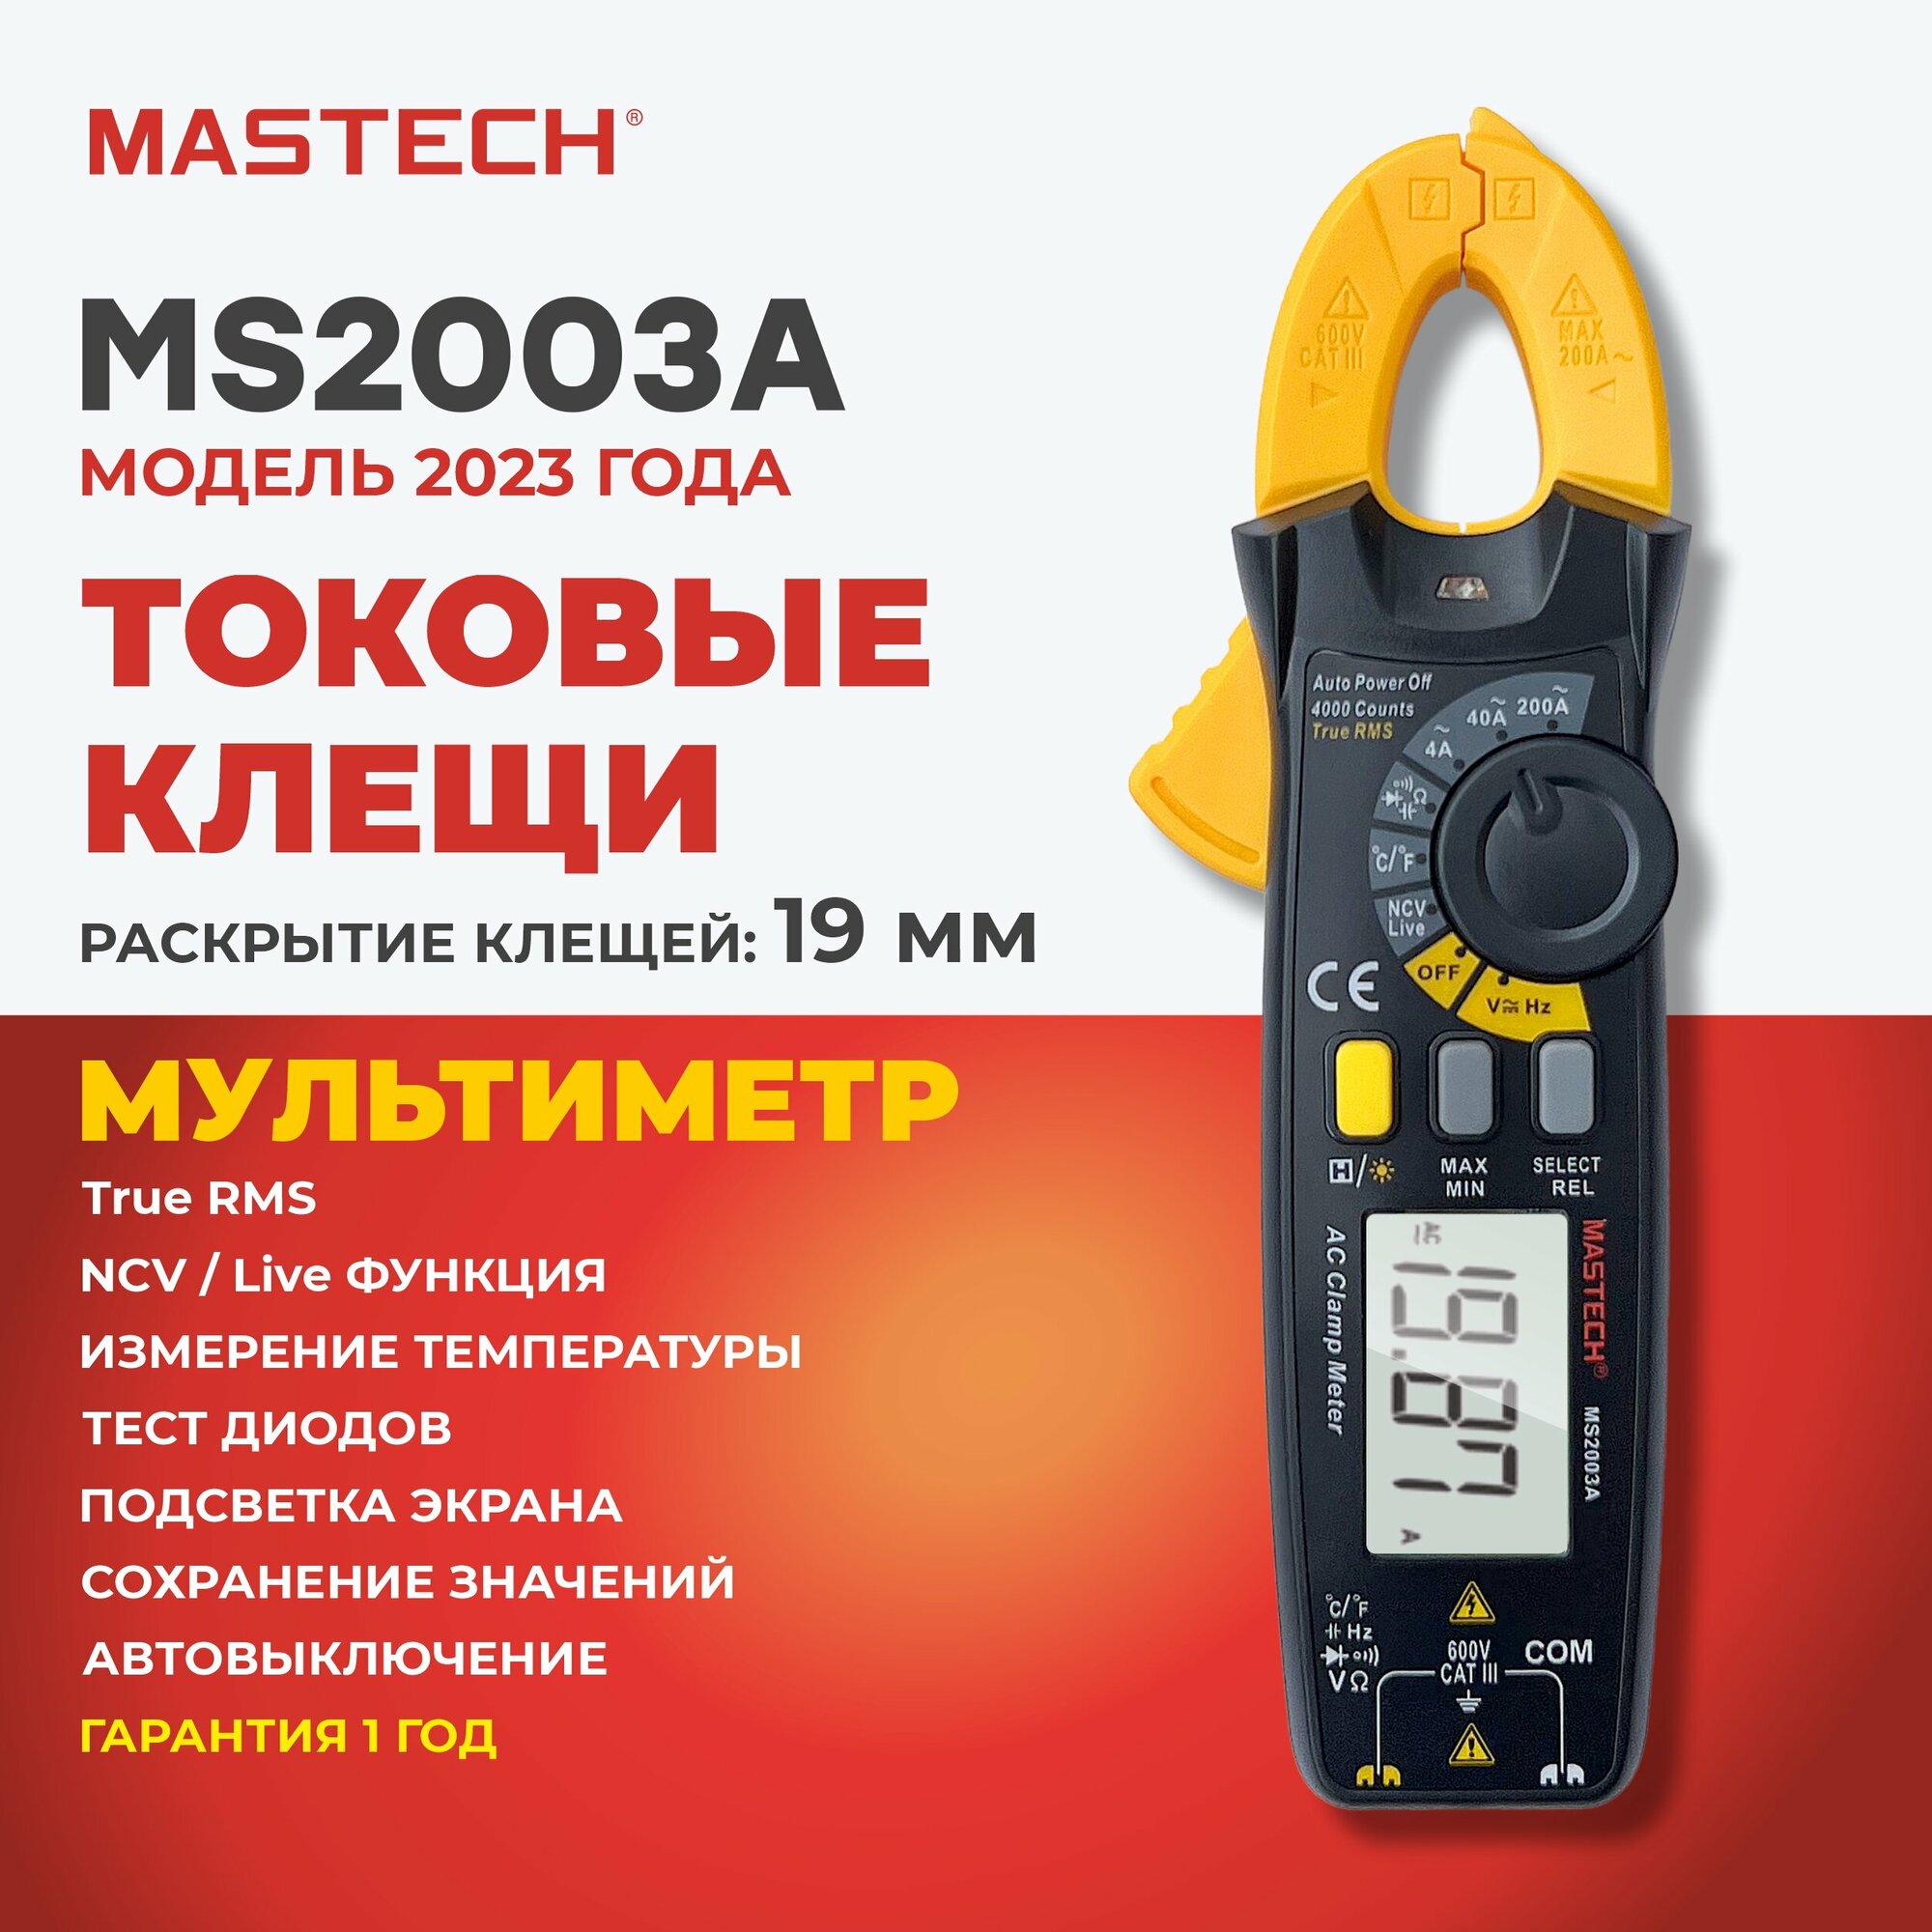 Токовые клещи MS2003A MASTECH ёмкость частота температура MIN/MAX/REL разрядность 4000